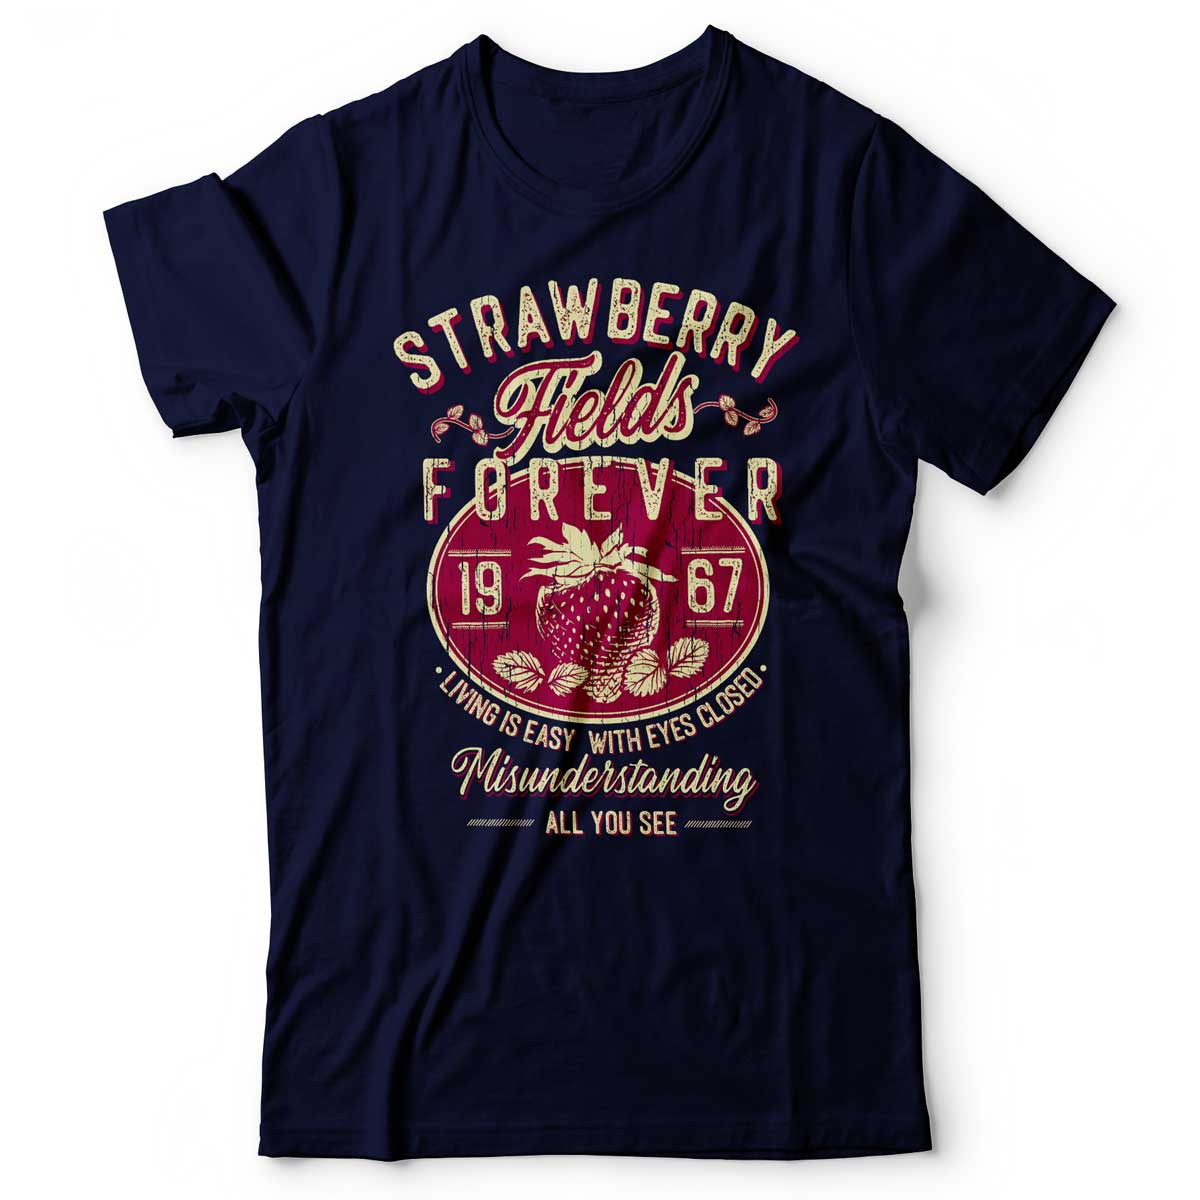 The Beatles - Strawberry Fields Forever - Men's T-Shirt Navy Blue